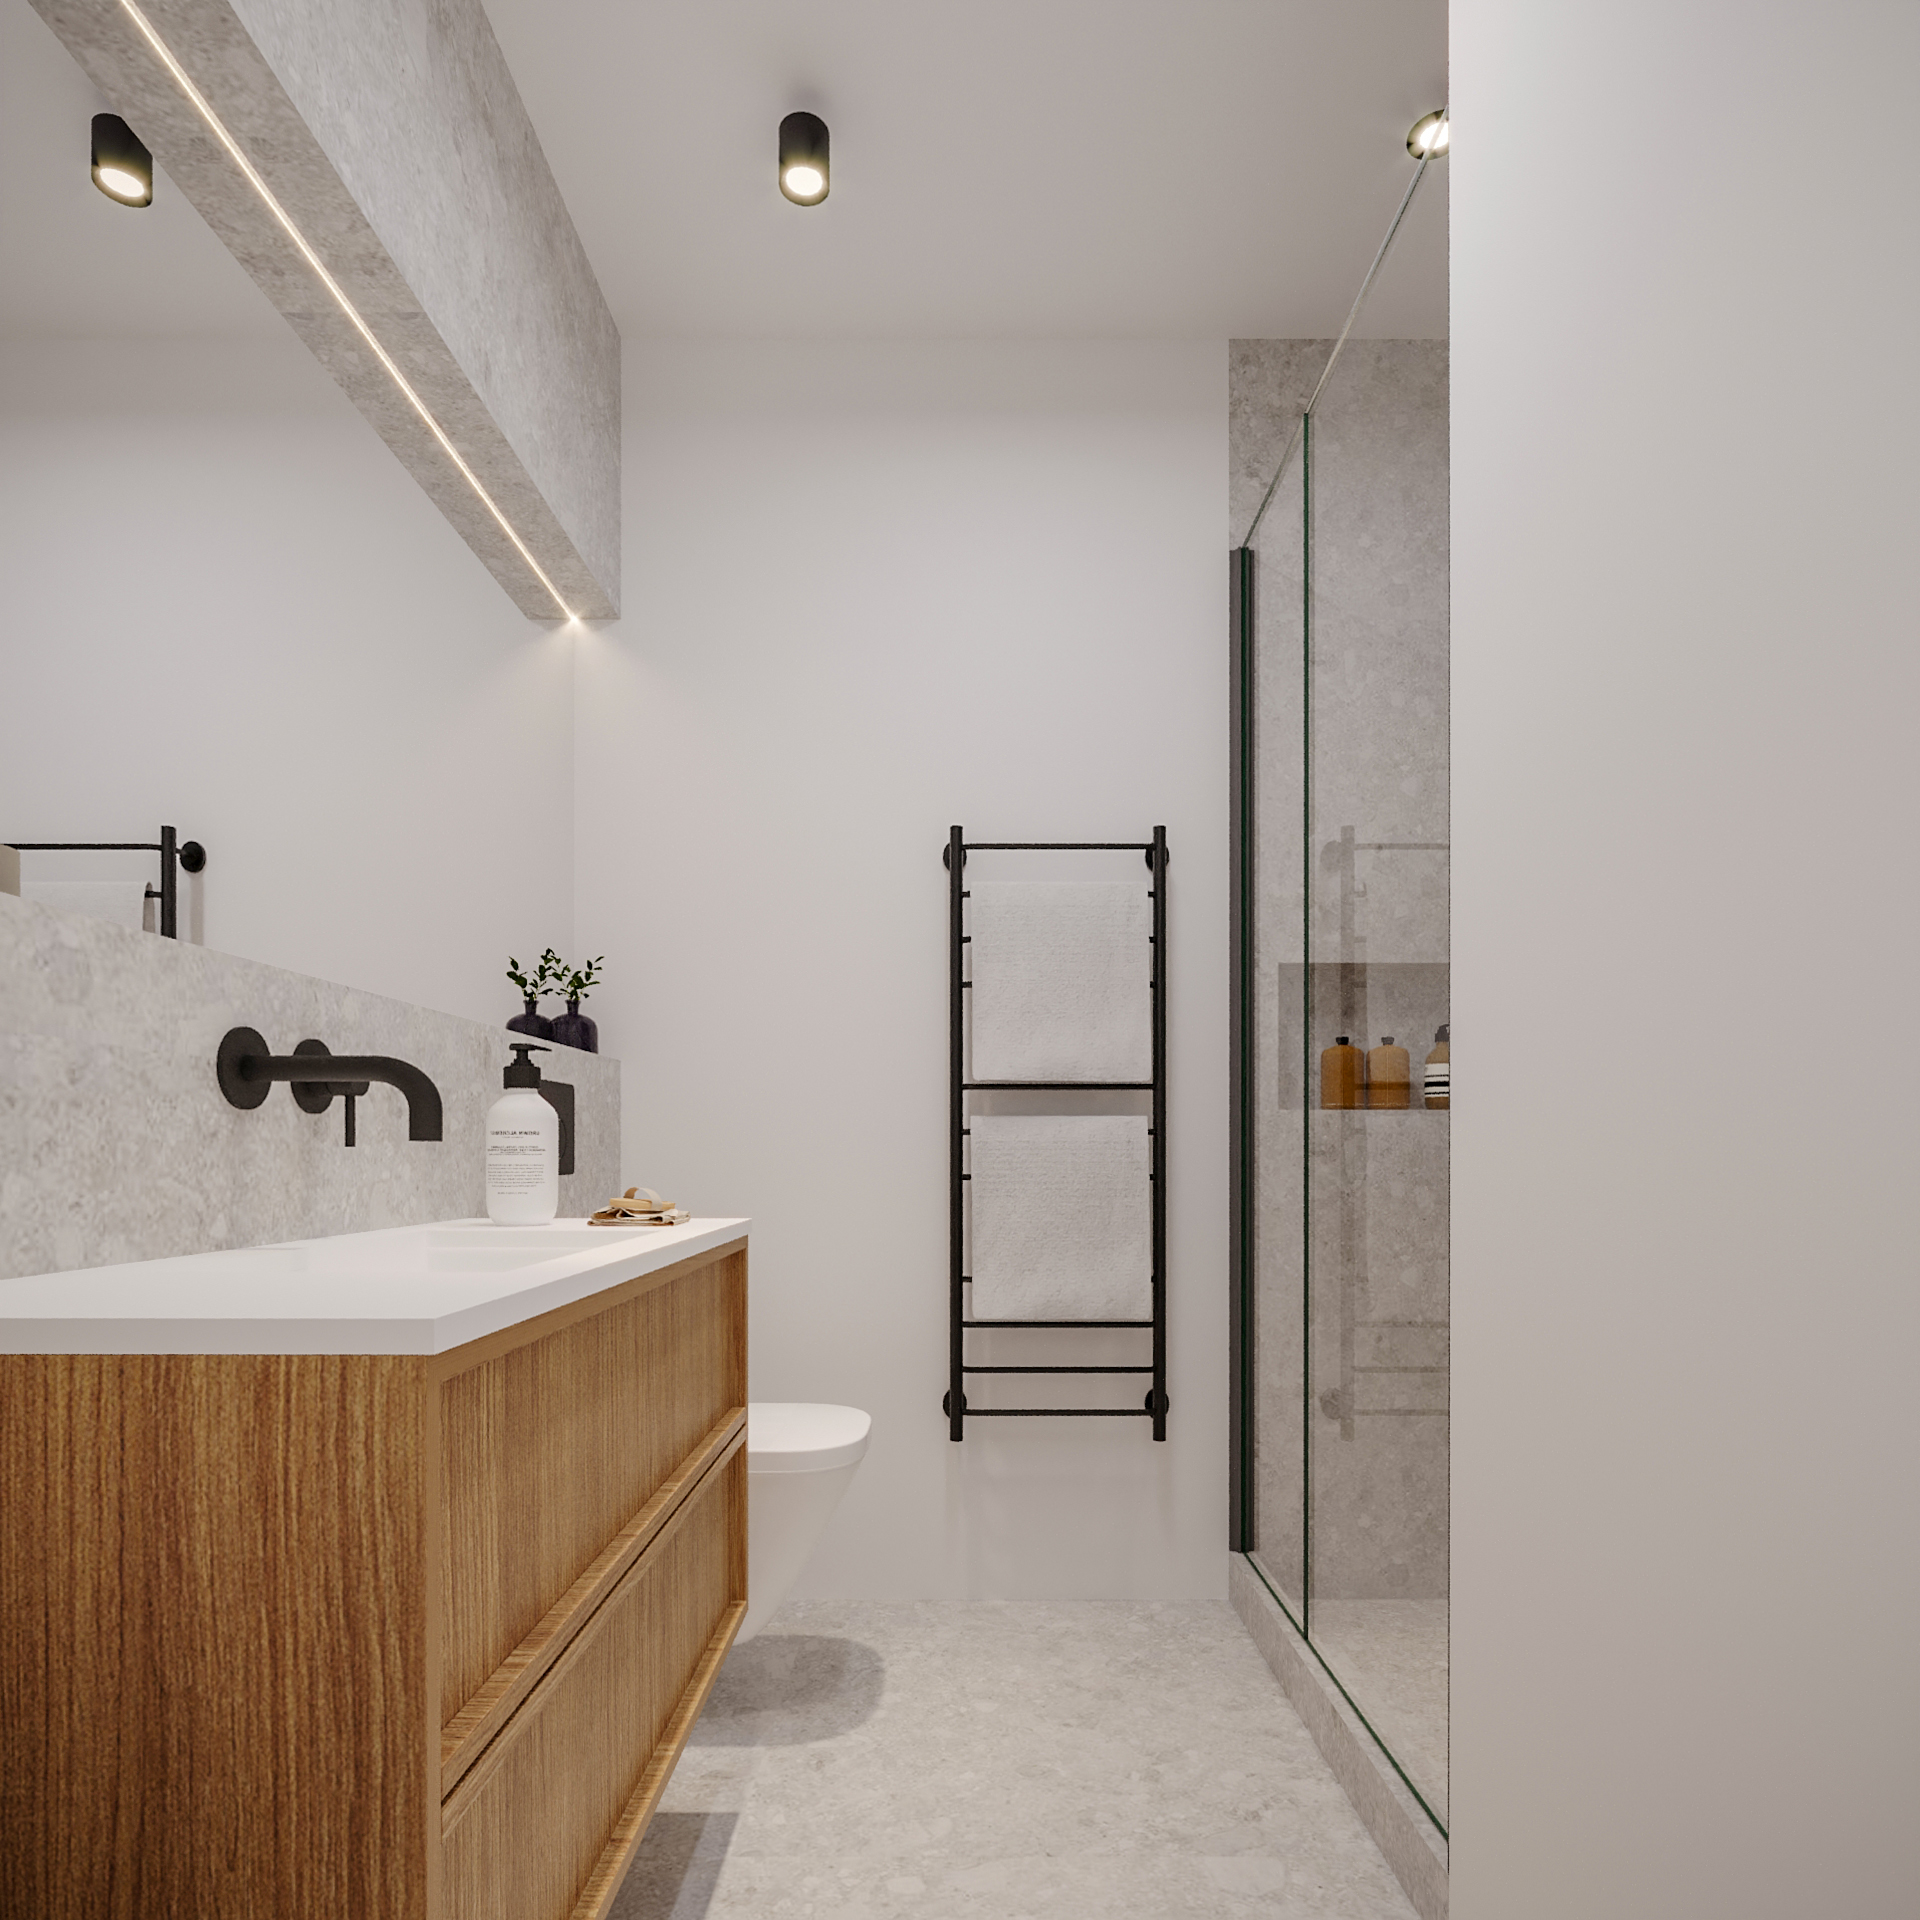 Design de interiores - casa de banho minimalista e moderna